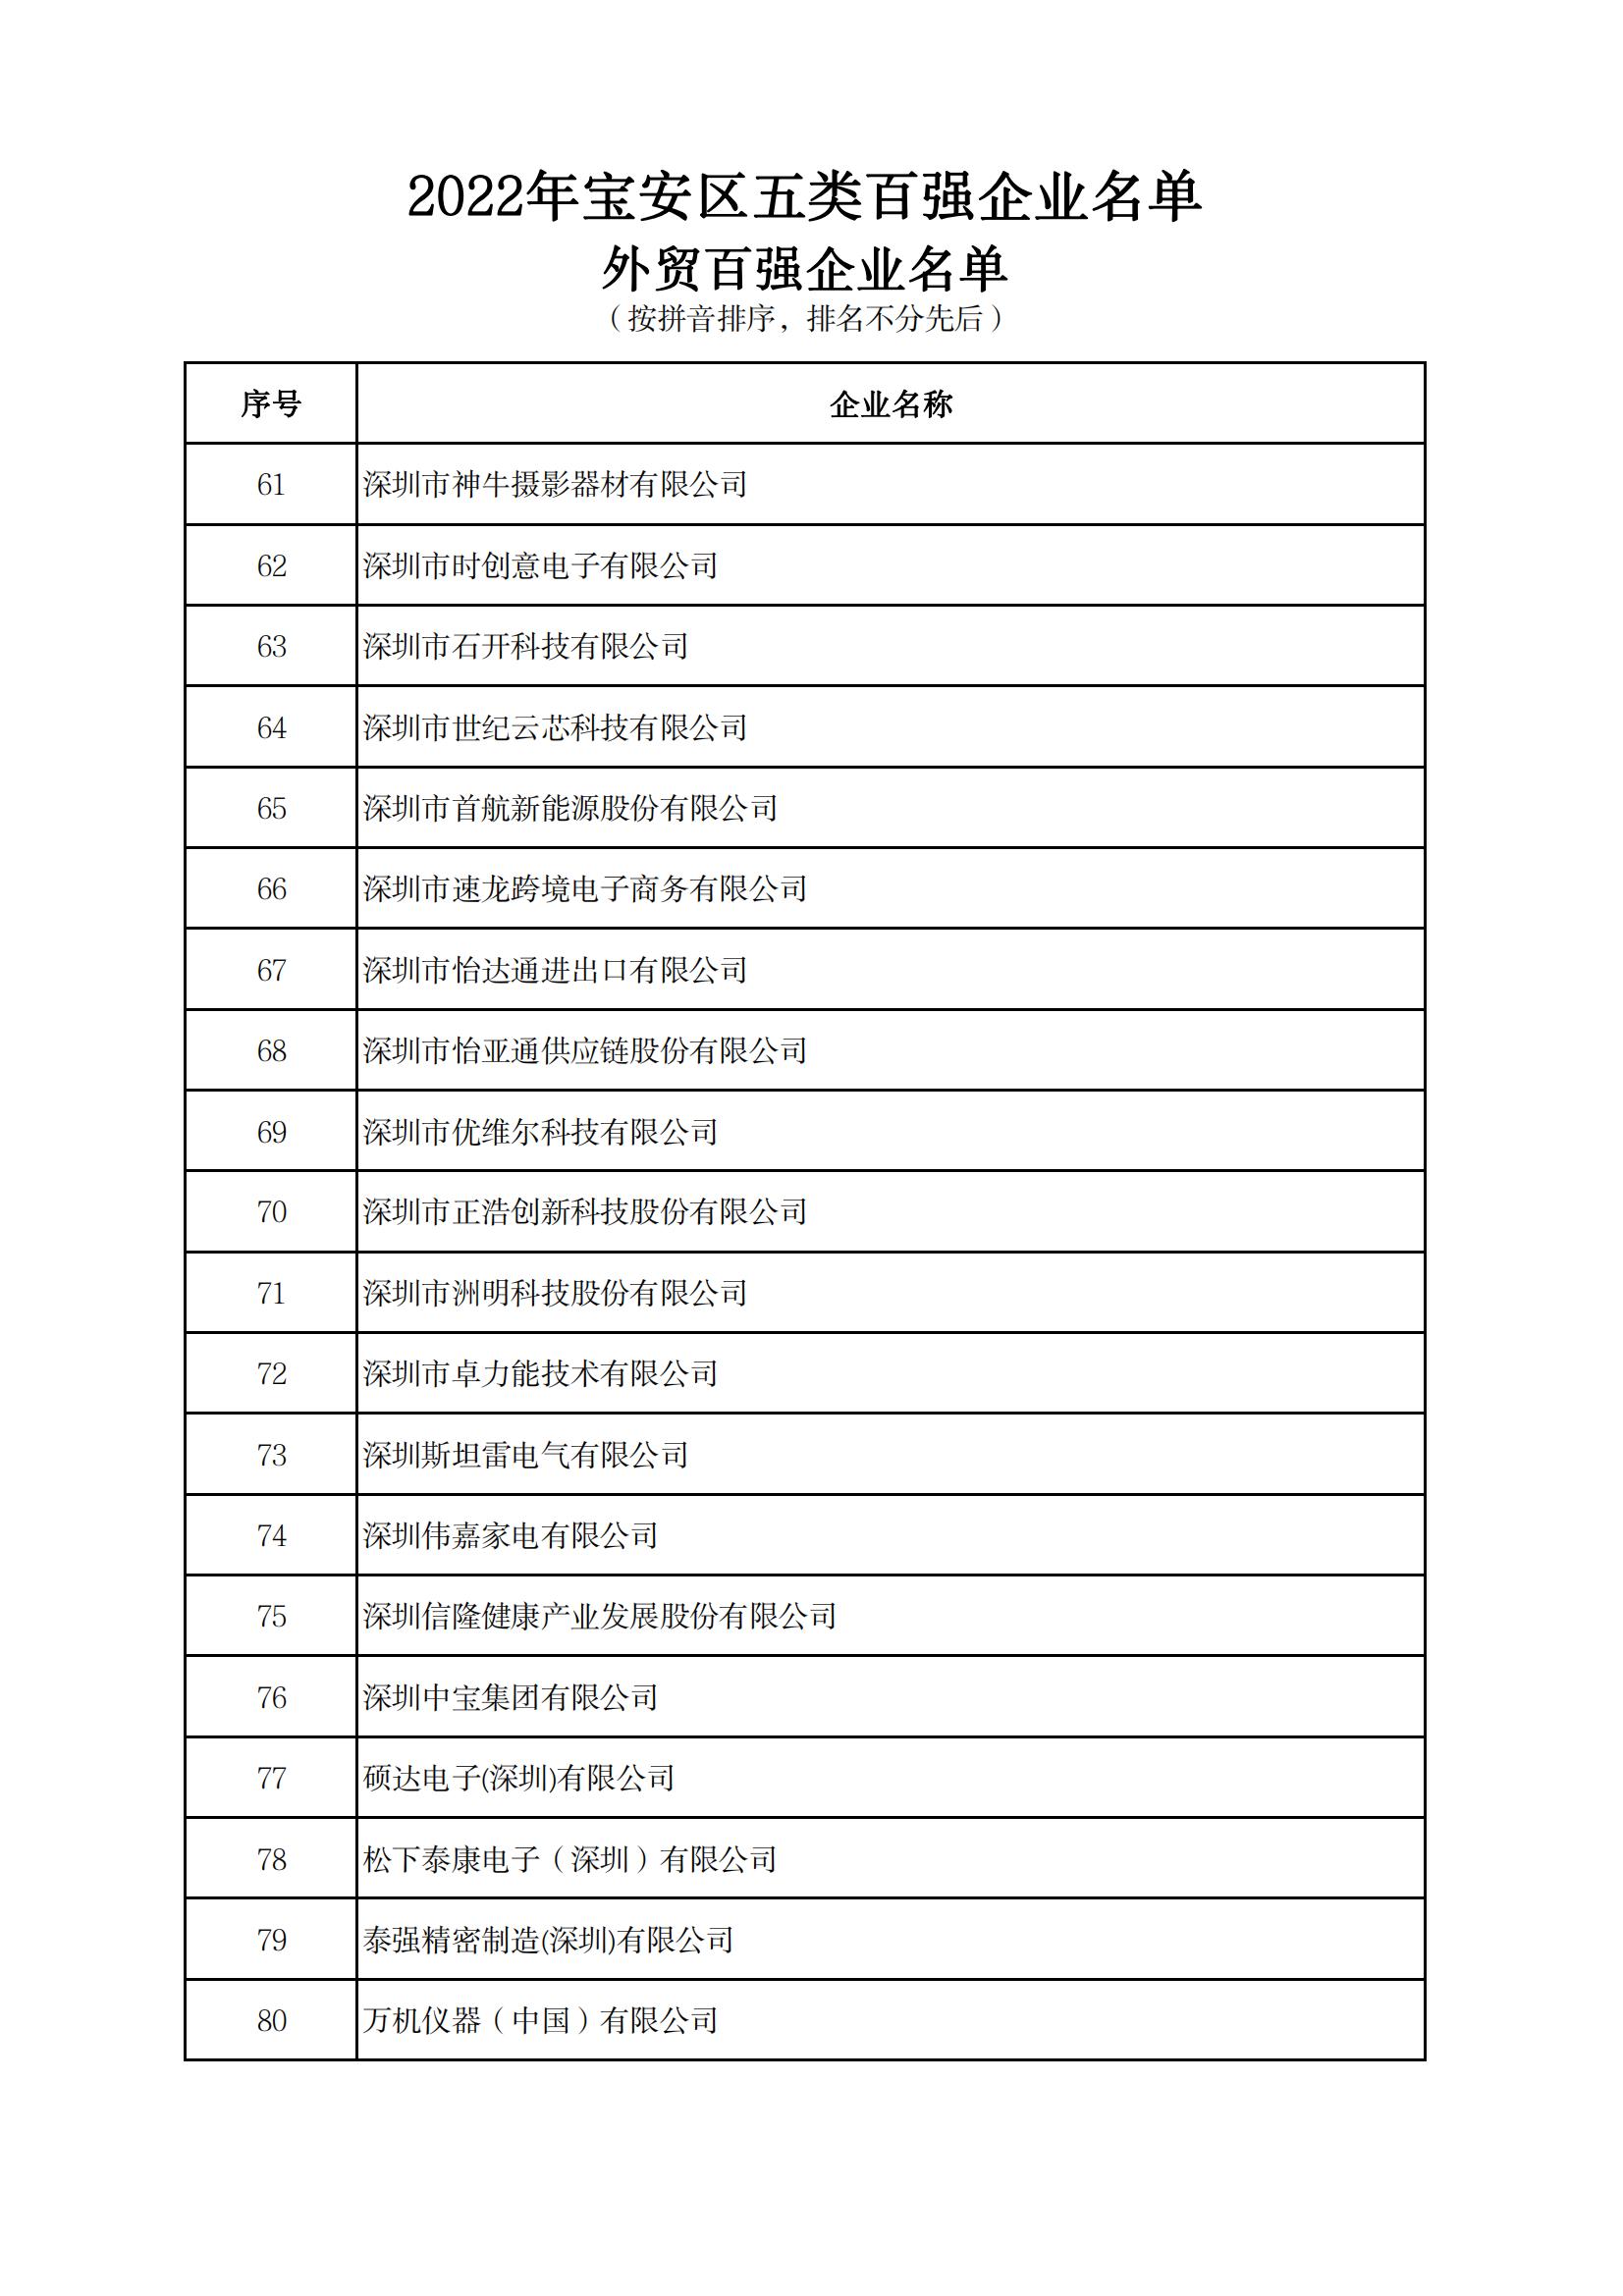 附件：2022年宝安区五类百强企业名单_18.jpg